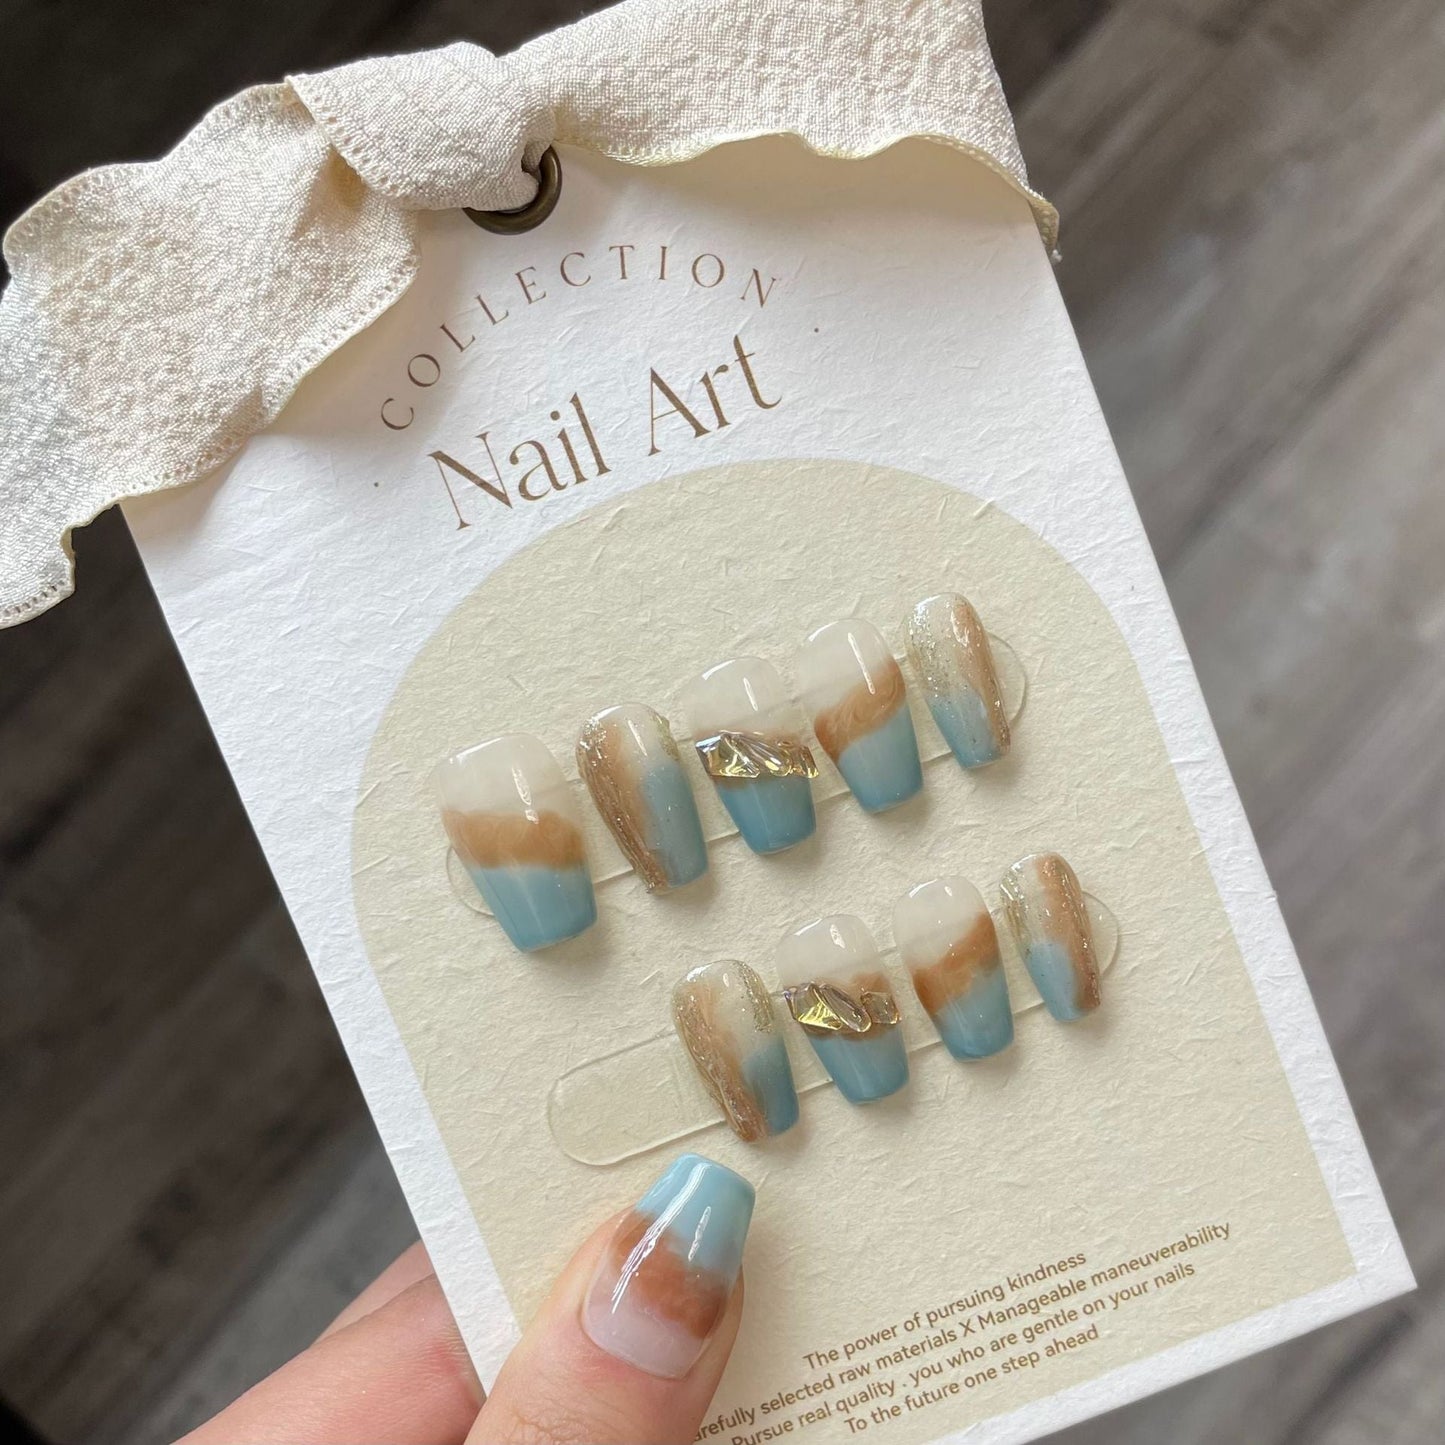 775 Halo staining style press on nails 100% handmade false nails white blue